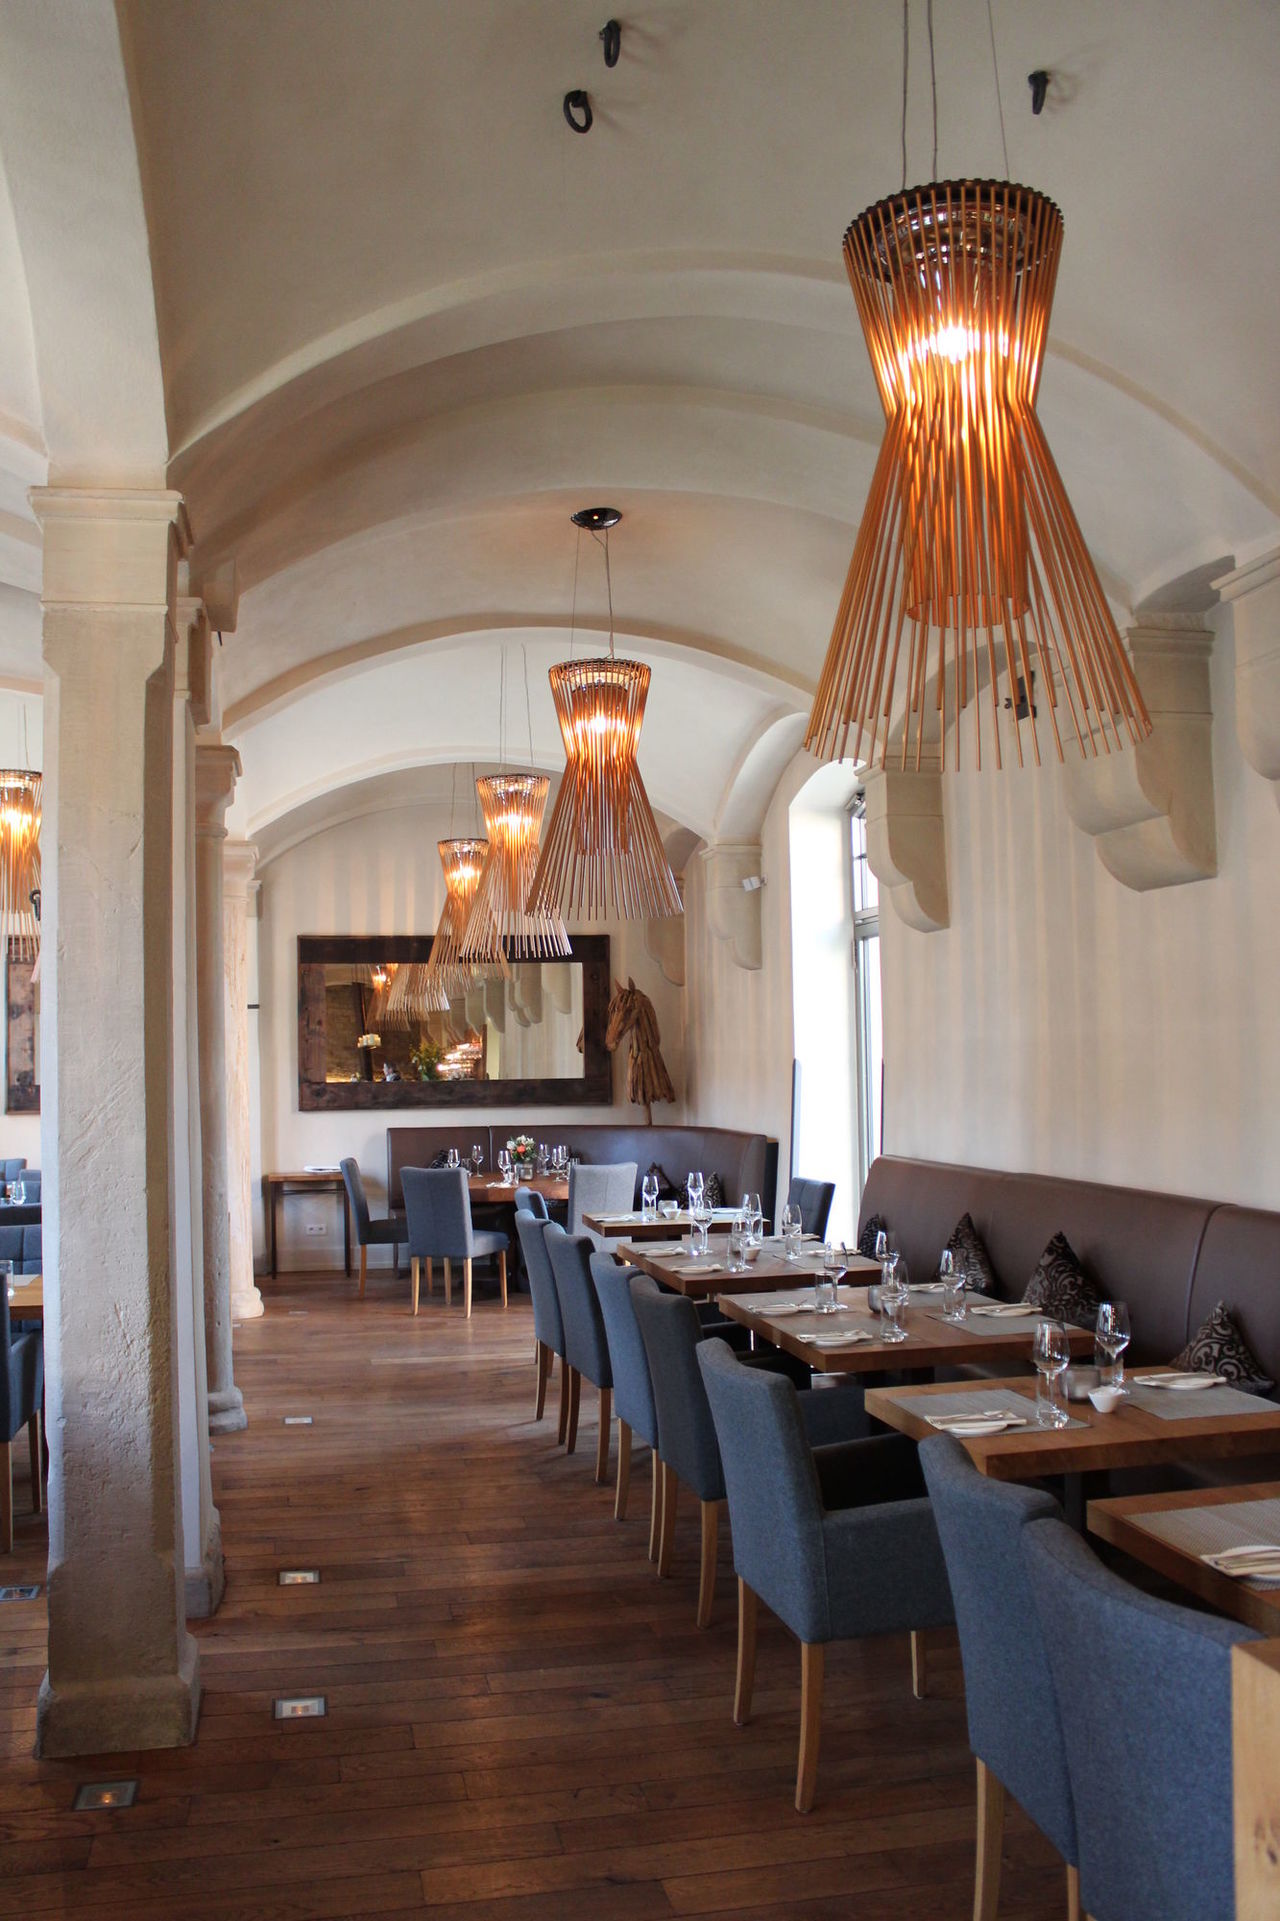 Foto: Restaurant mit dunklem Holzboden und einer Gewölbedecke, die auf rechteckigen Säulen aufliegt.